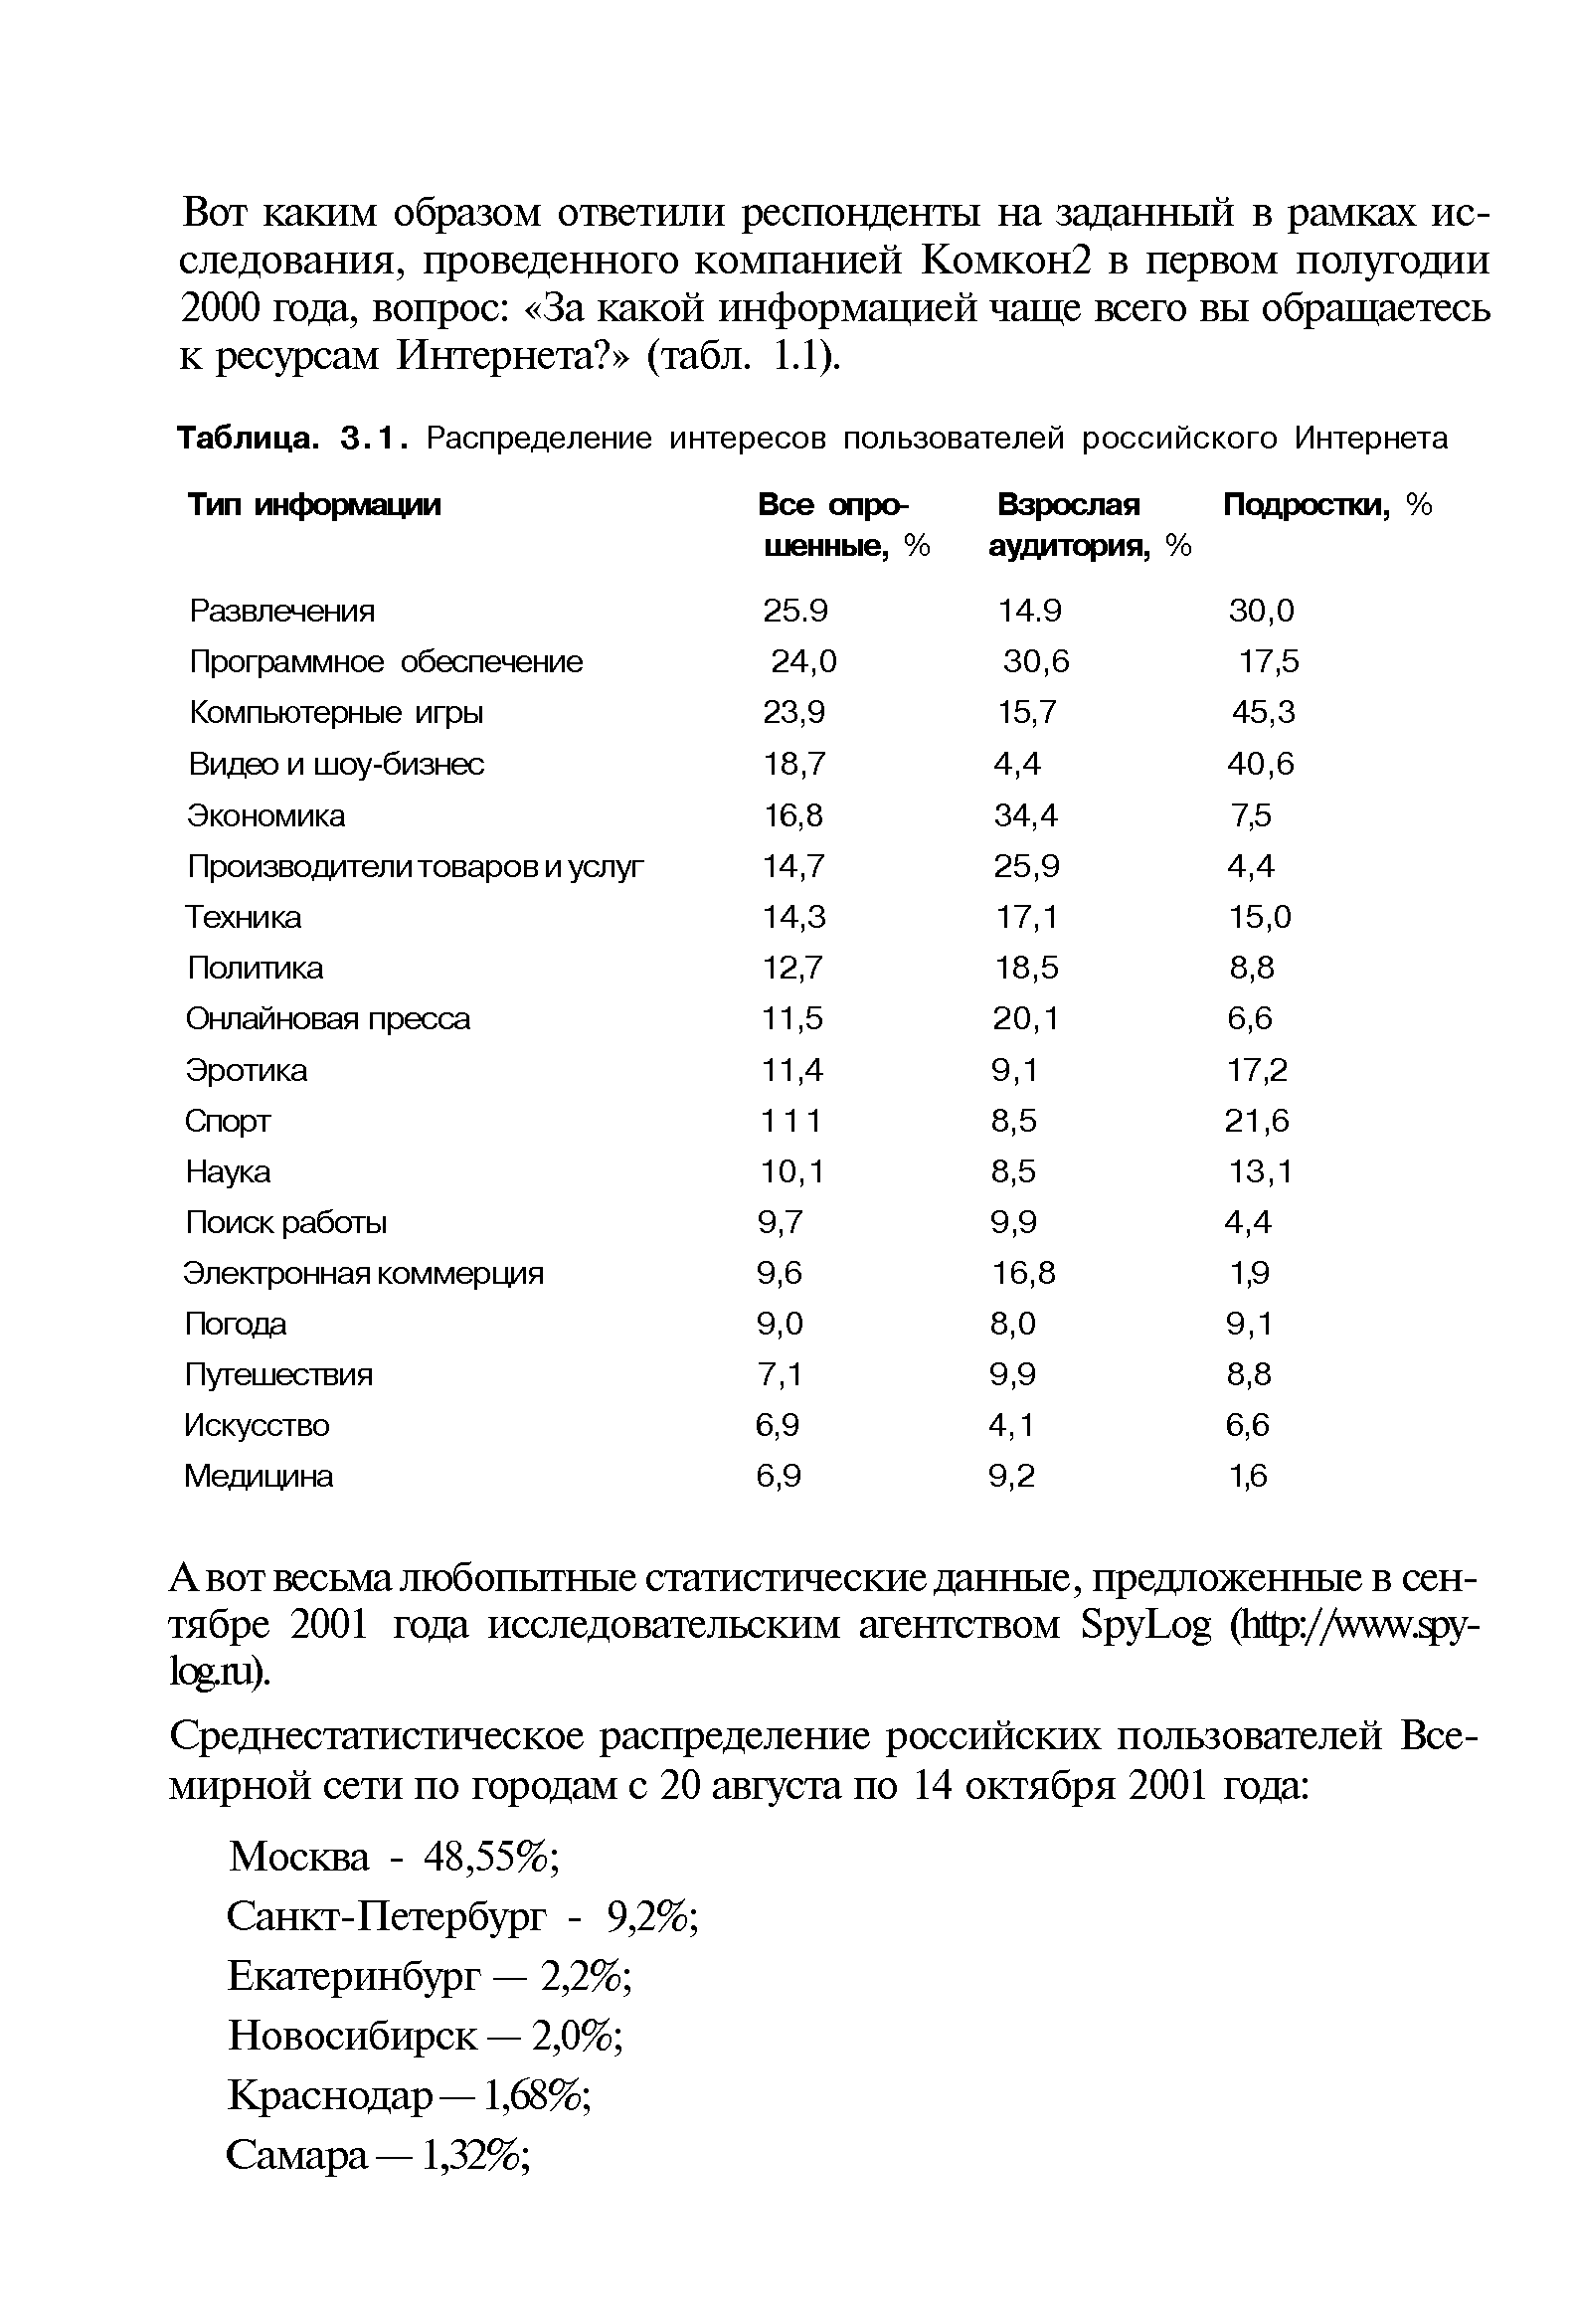 Таблица. 3.1. Распределение интересов пользователей российского Интернета
